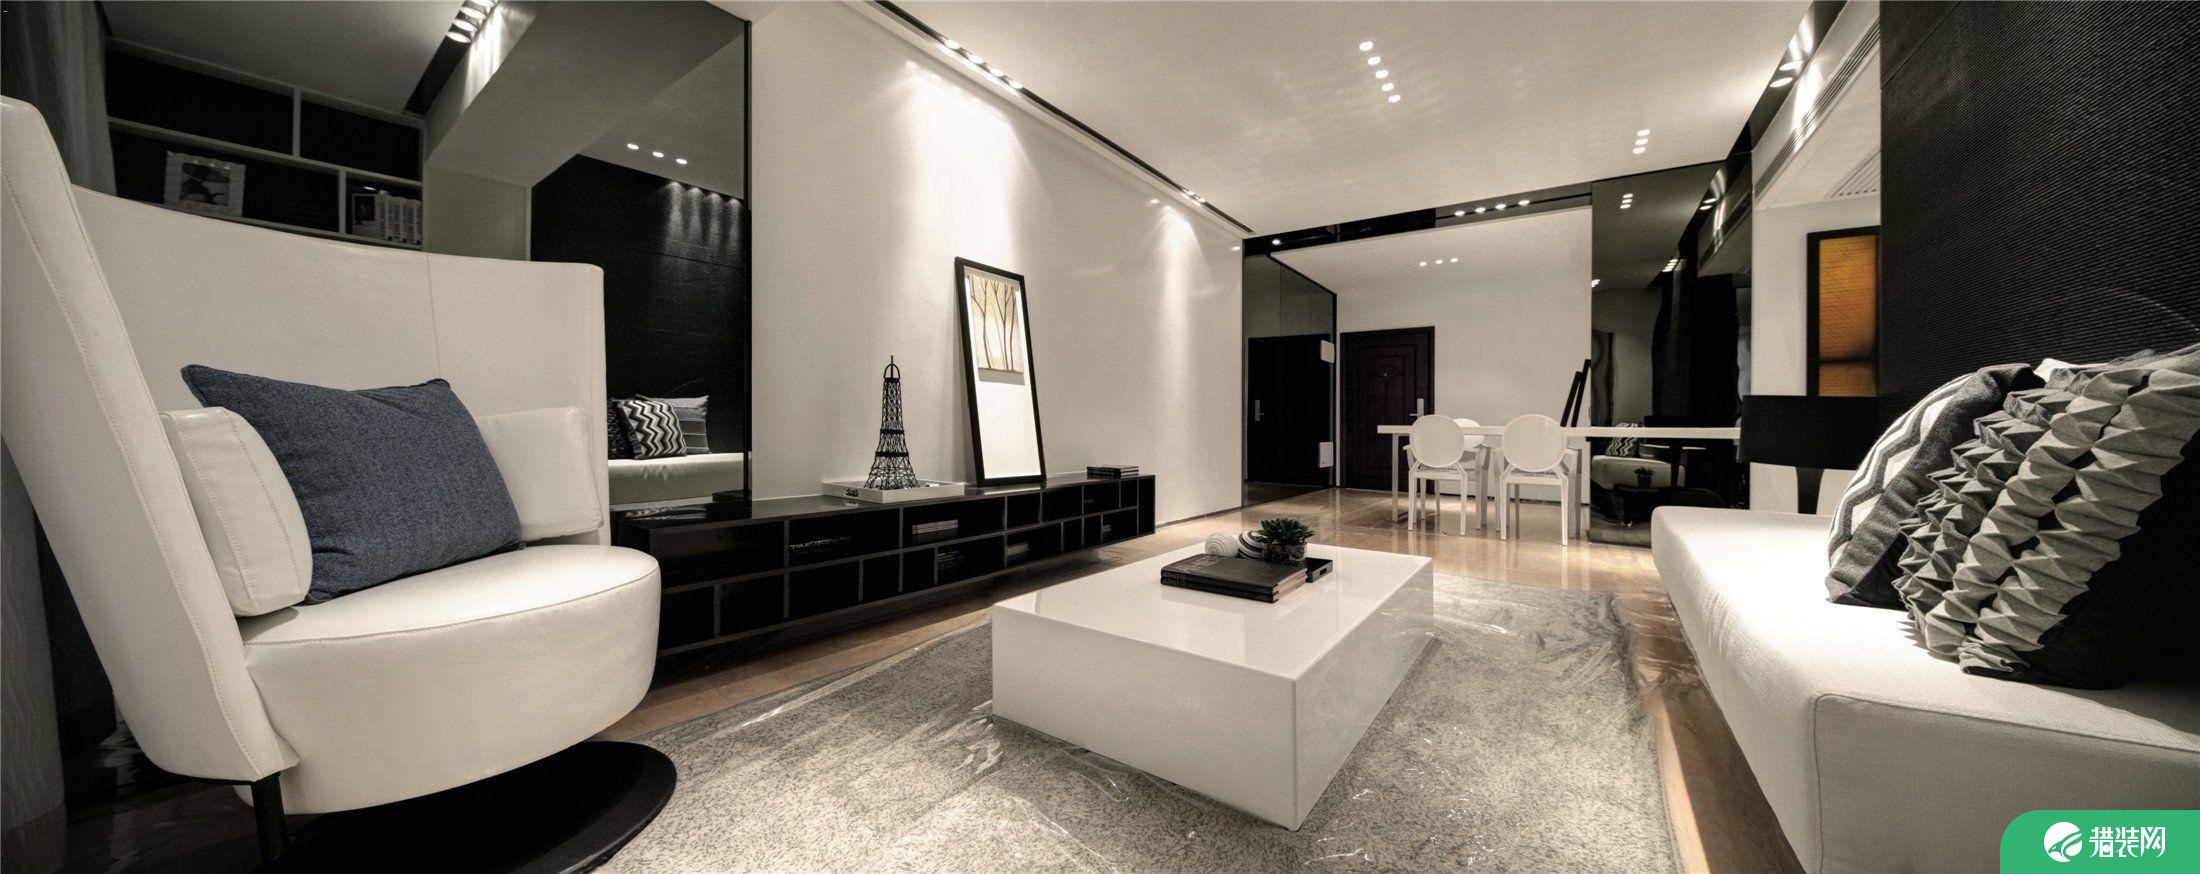 杭州创一居城南家园黑白现代风格装修效果图